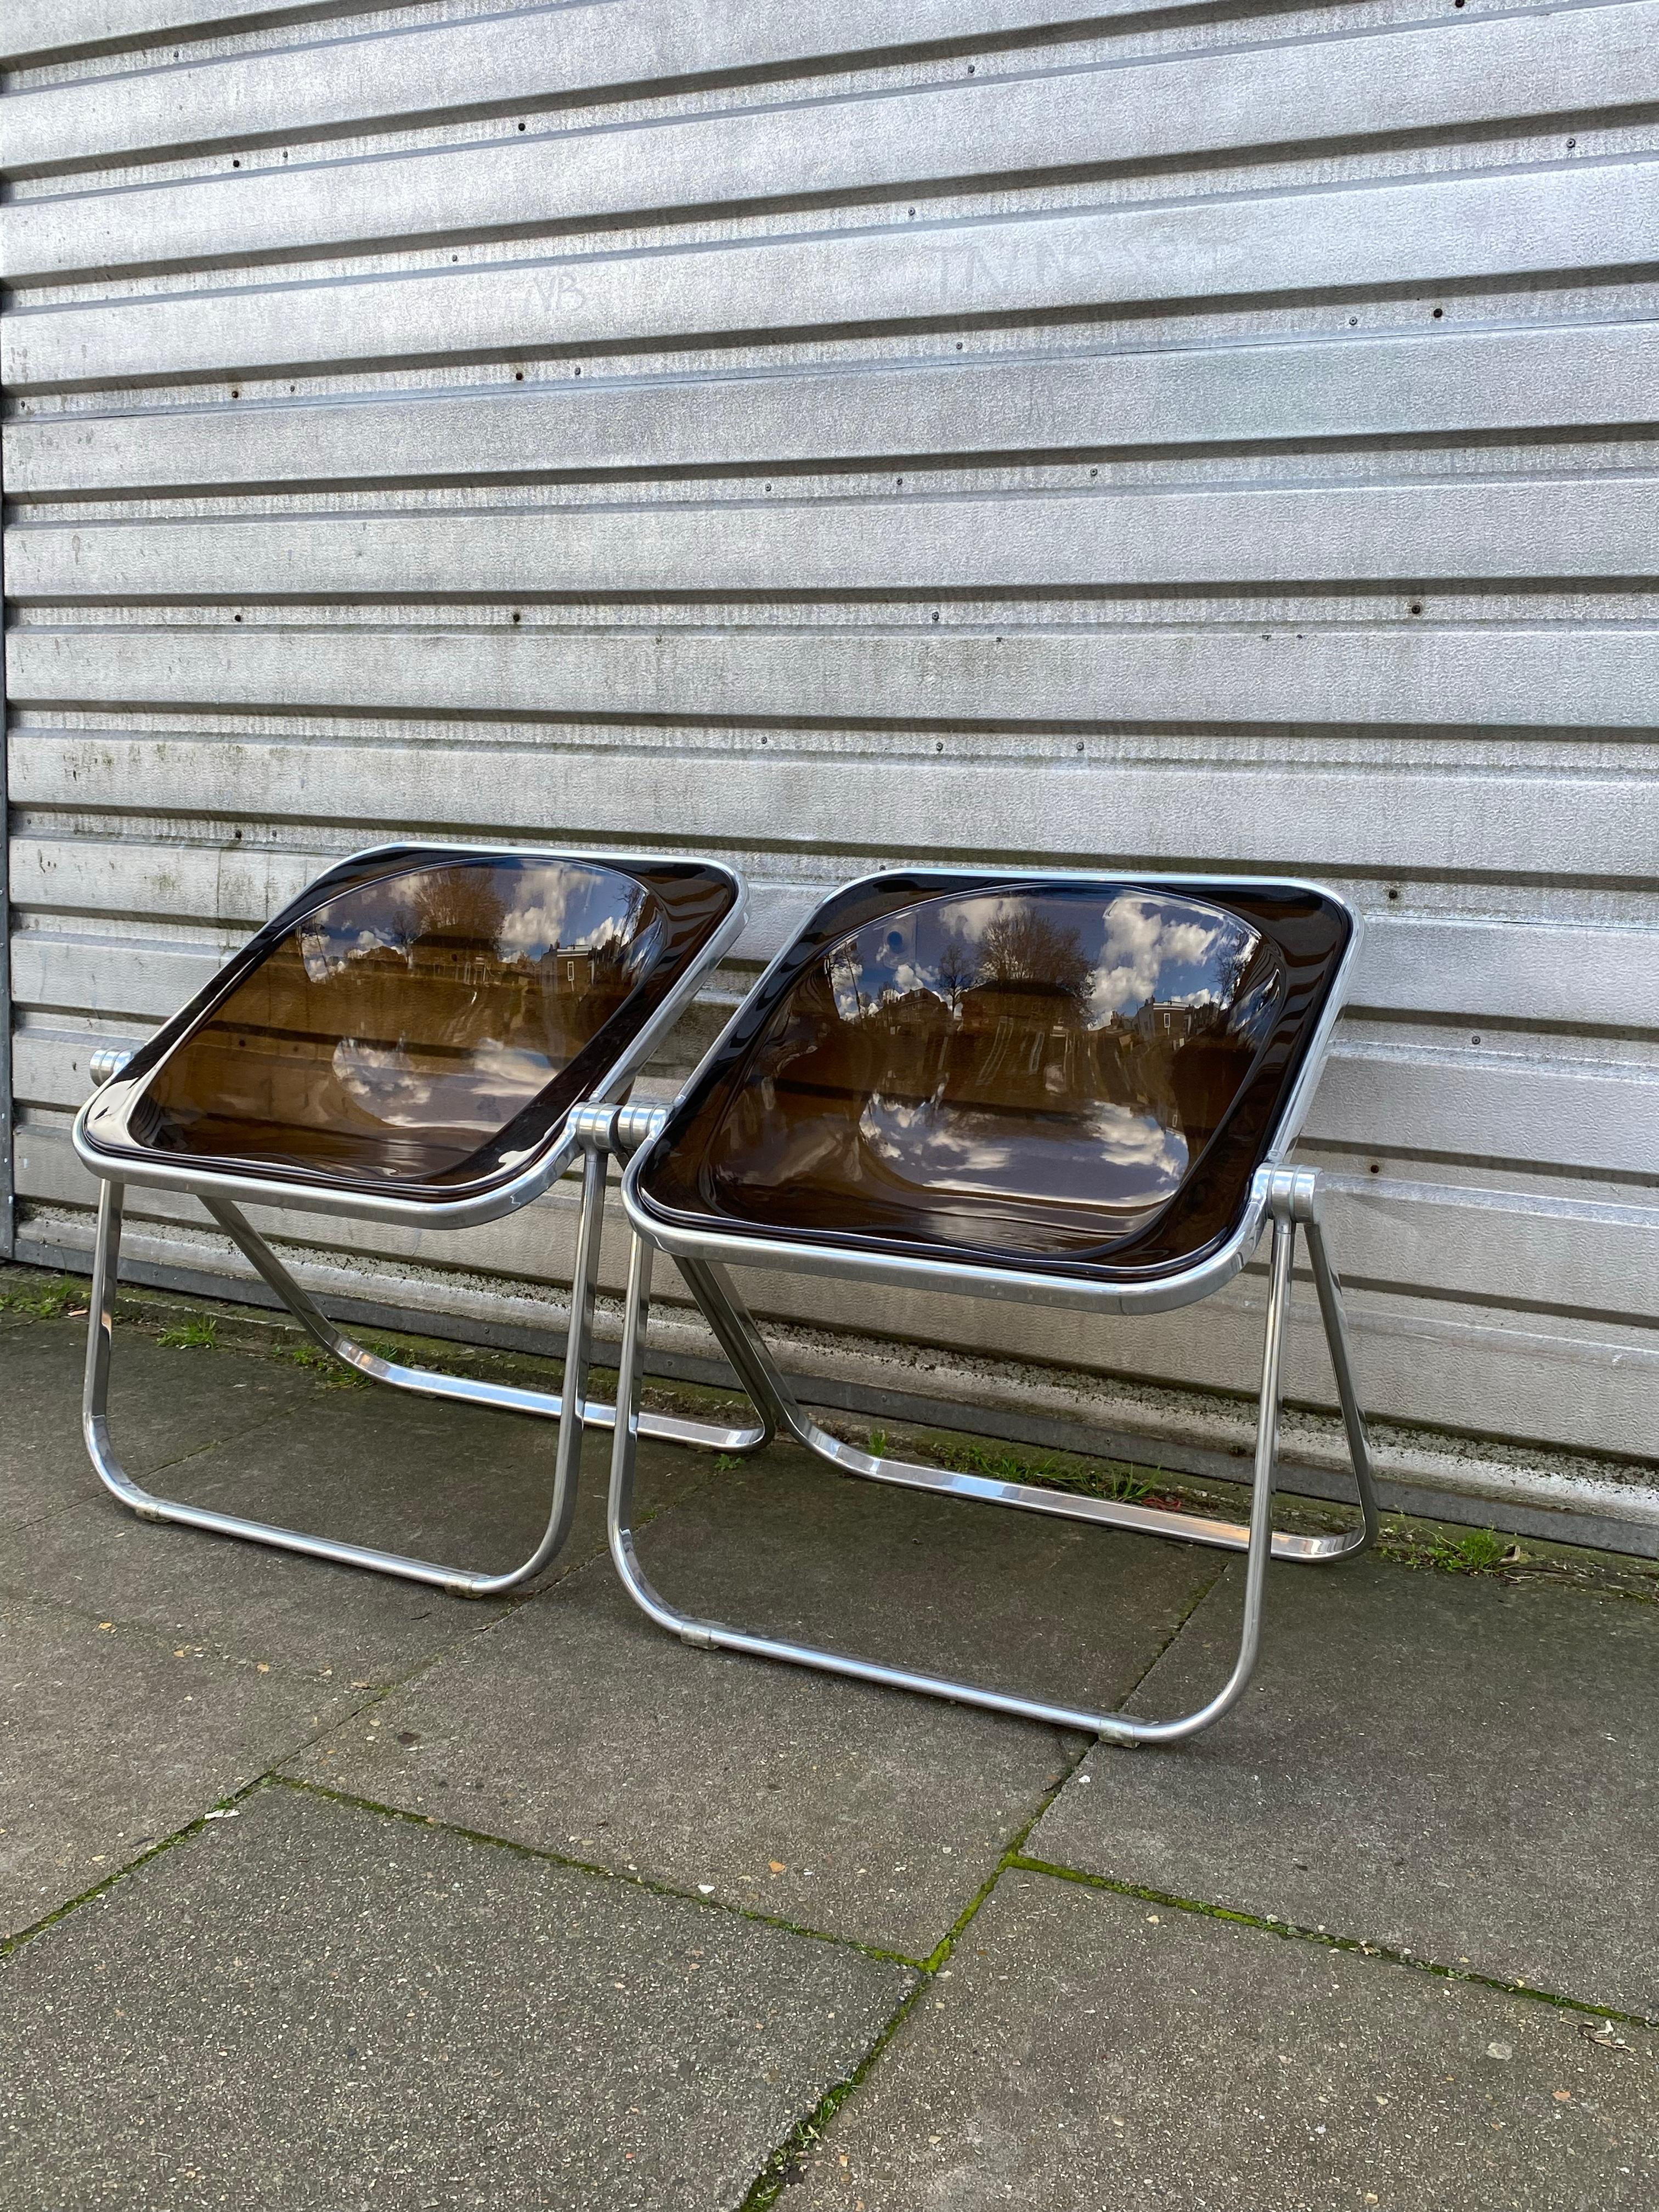 Klappstuhl Plona aus geräuchertem Acryl von Giancarlo Piretti für Castelli, 70er Jahre.

Diese beiden Stühle wurden 1973 ein Jahr lang auf der Triennale von Mailand ausgestellt. Dieses besondere Design befindet sich in der ständigen Sammlung des